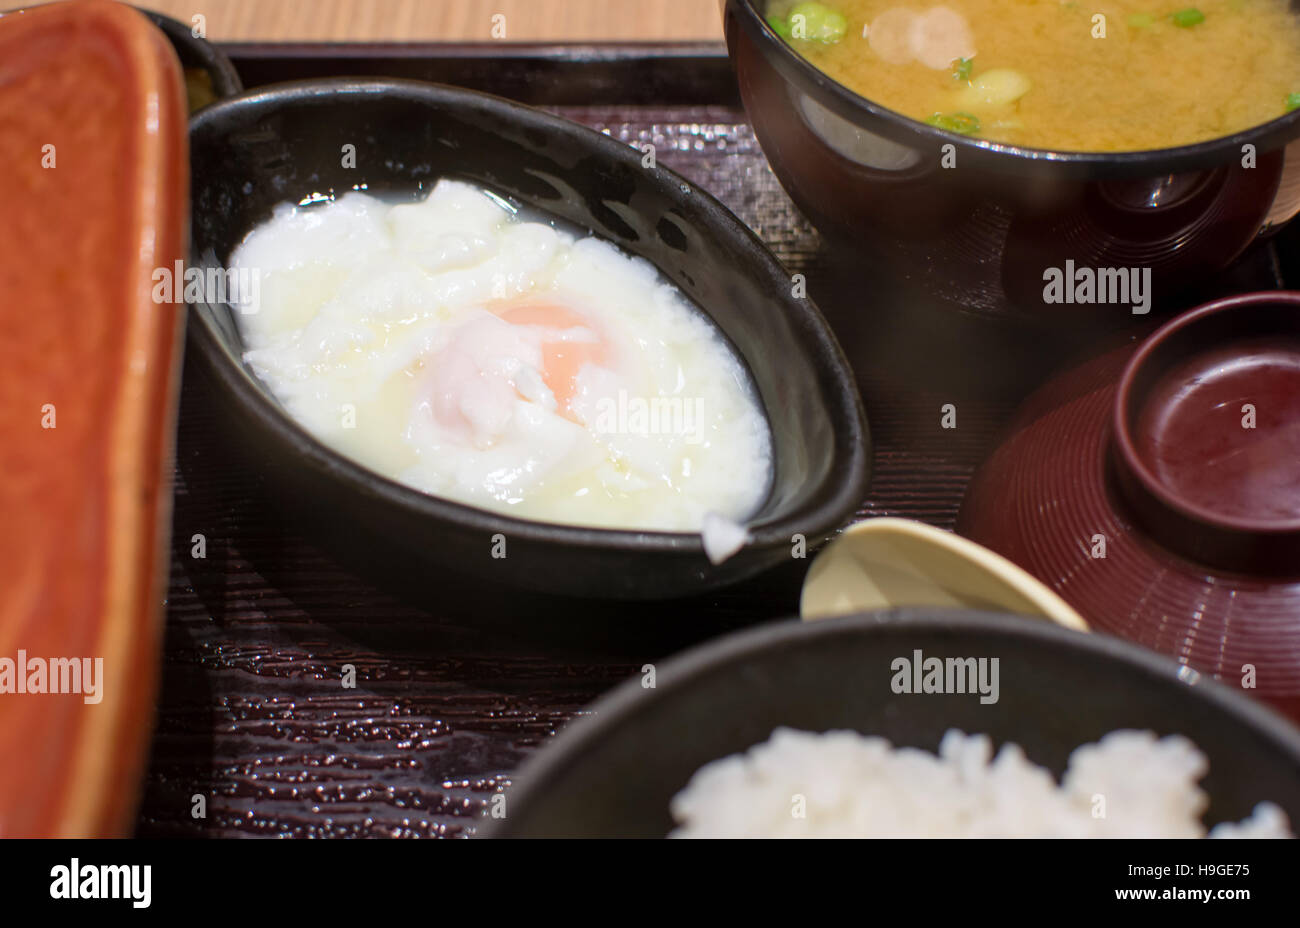 Giapponese uovo cotto servita nella ciotola di legno Foto Stock